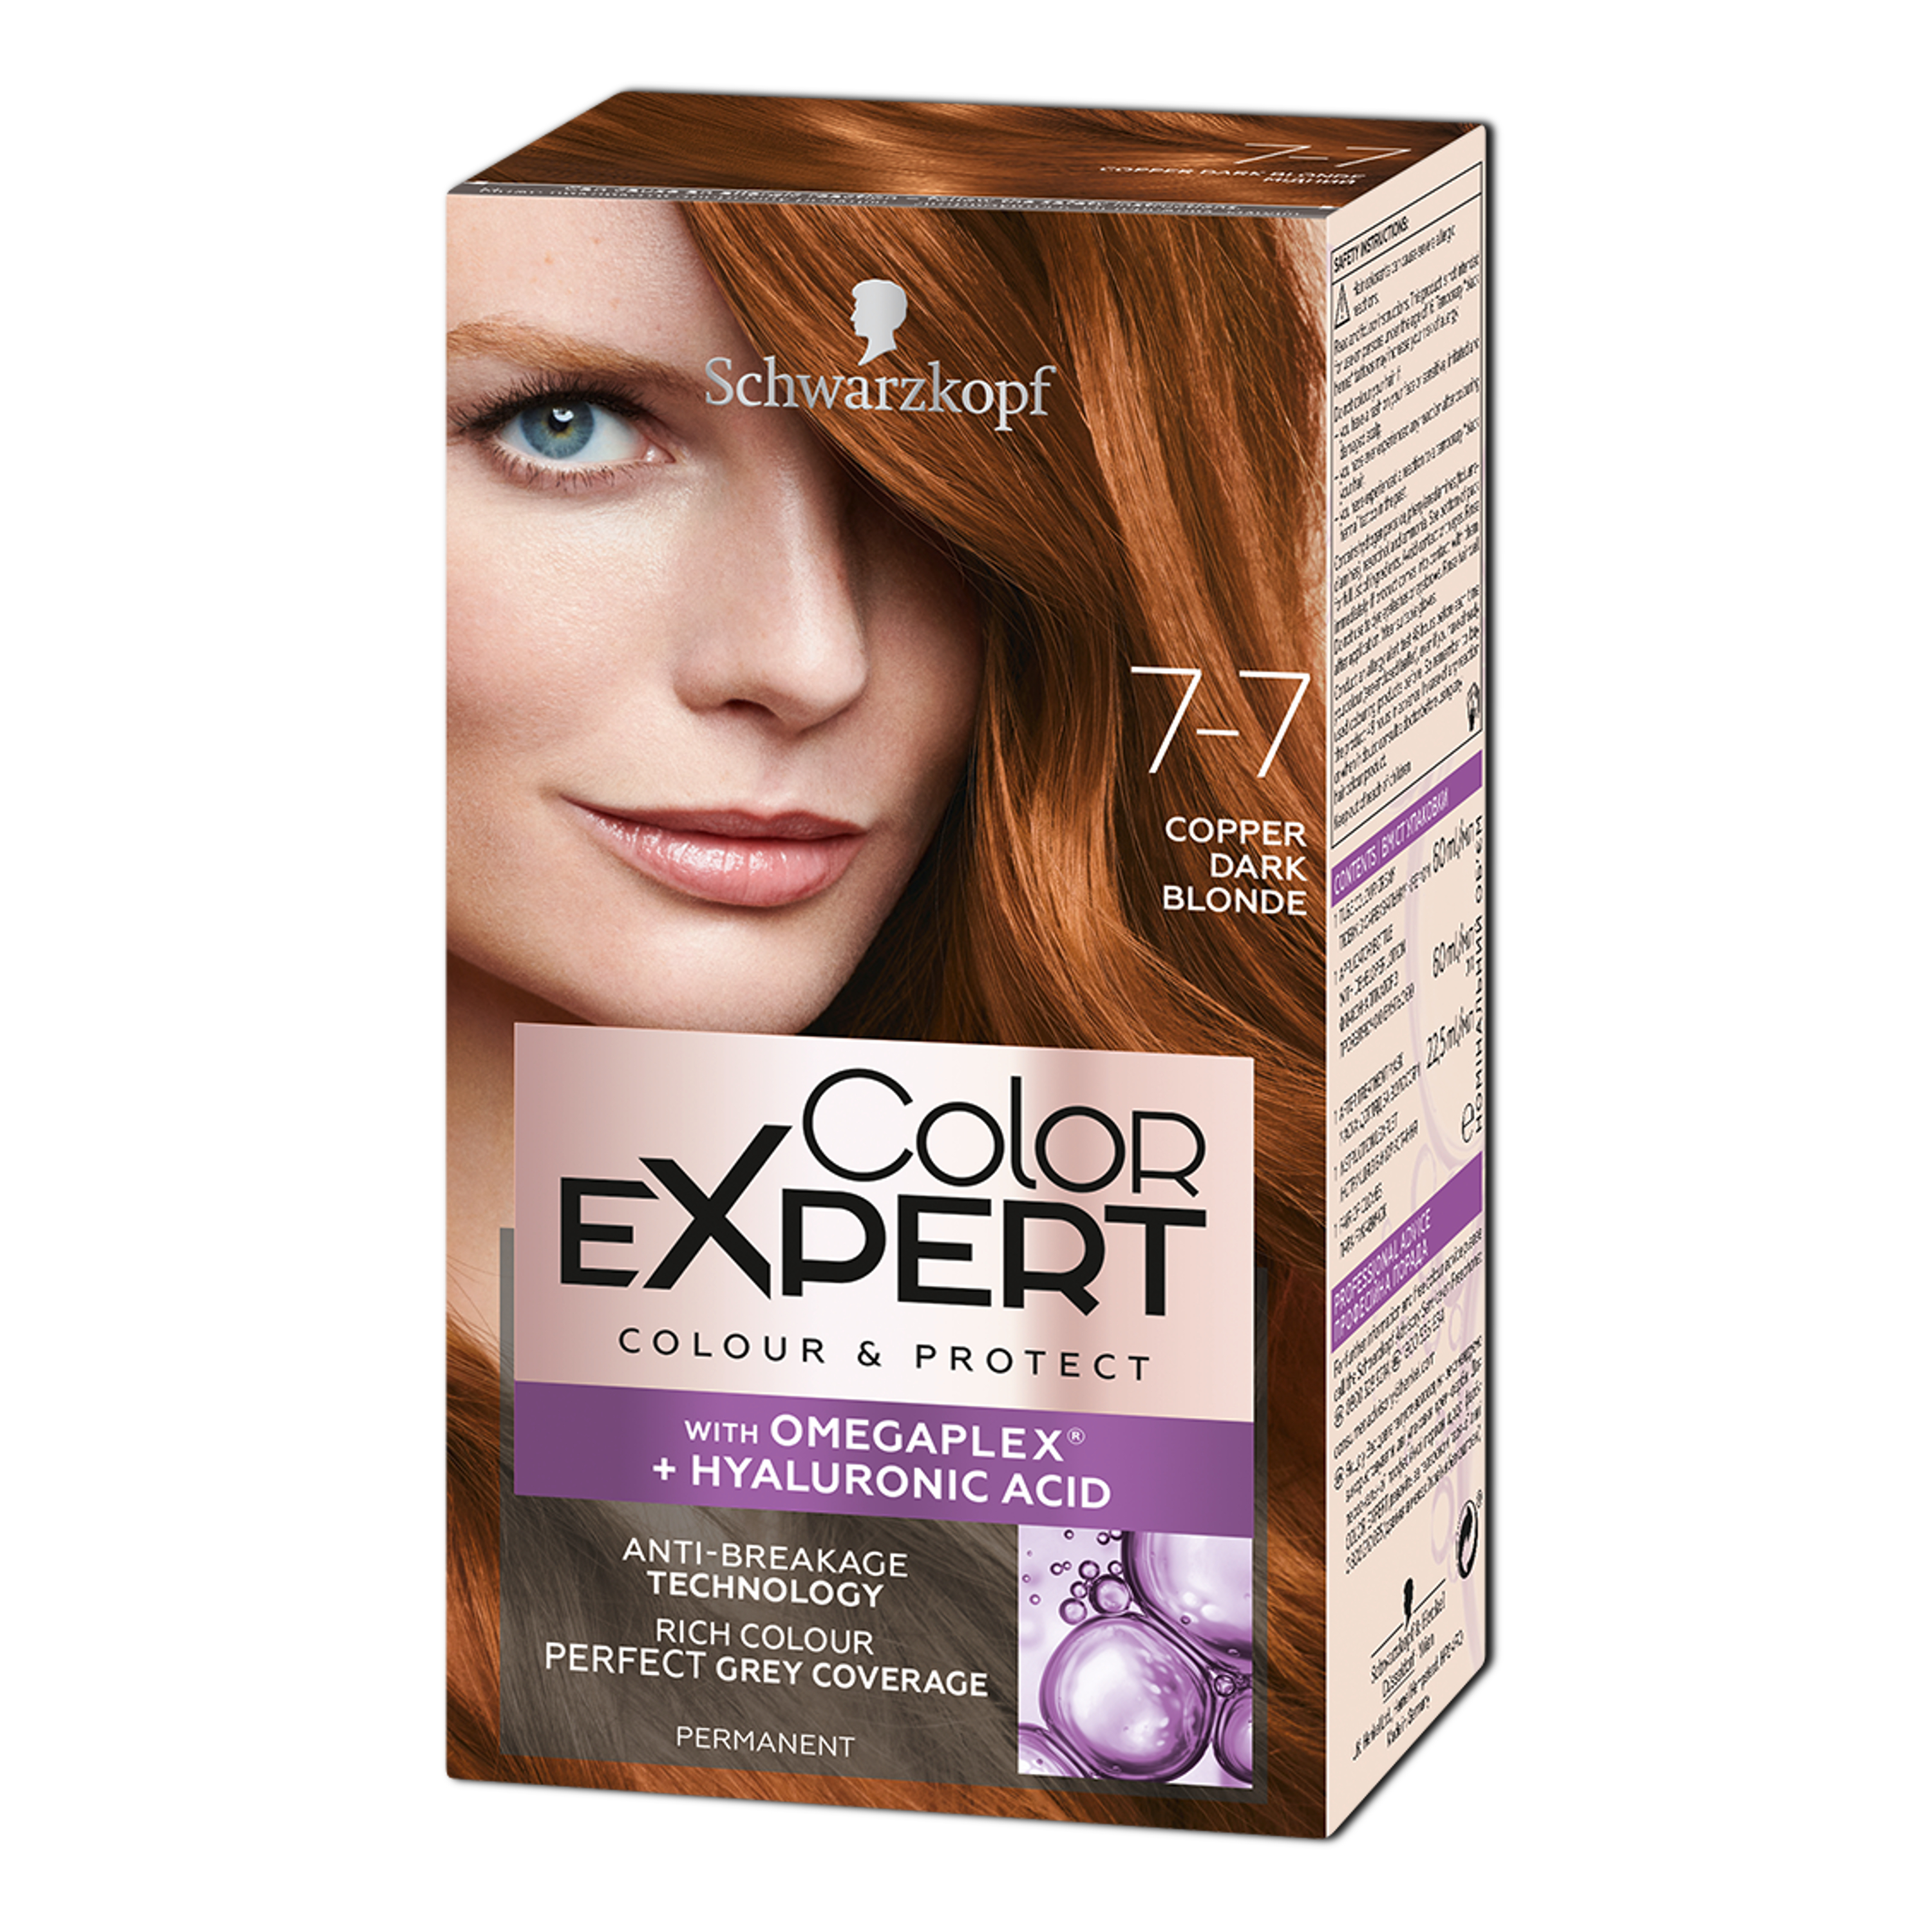 Крем-краска для волос Schwarzkopf Color Expert, с гиалуроновой кислотой, тон 7-7 (Медный), 142,5 мл - фото 1